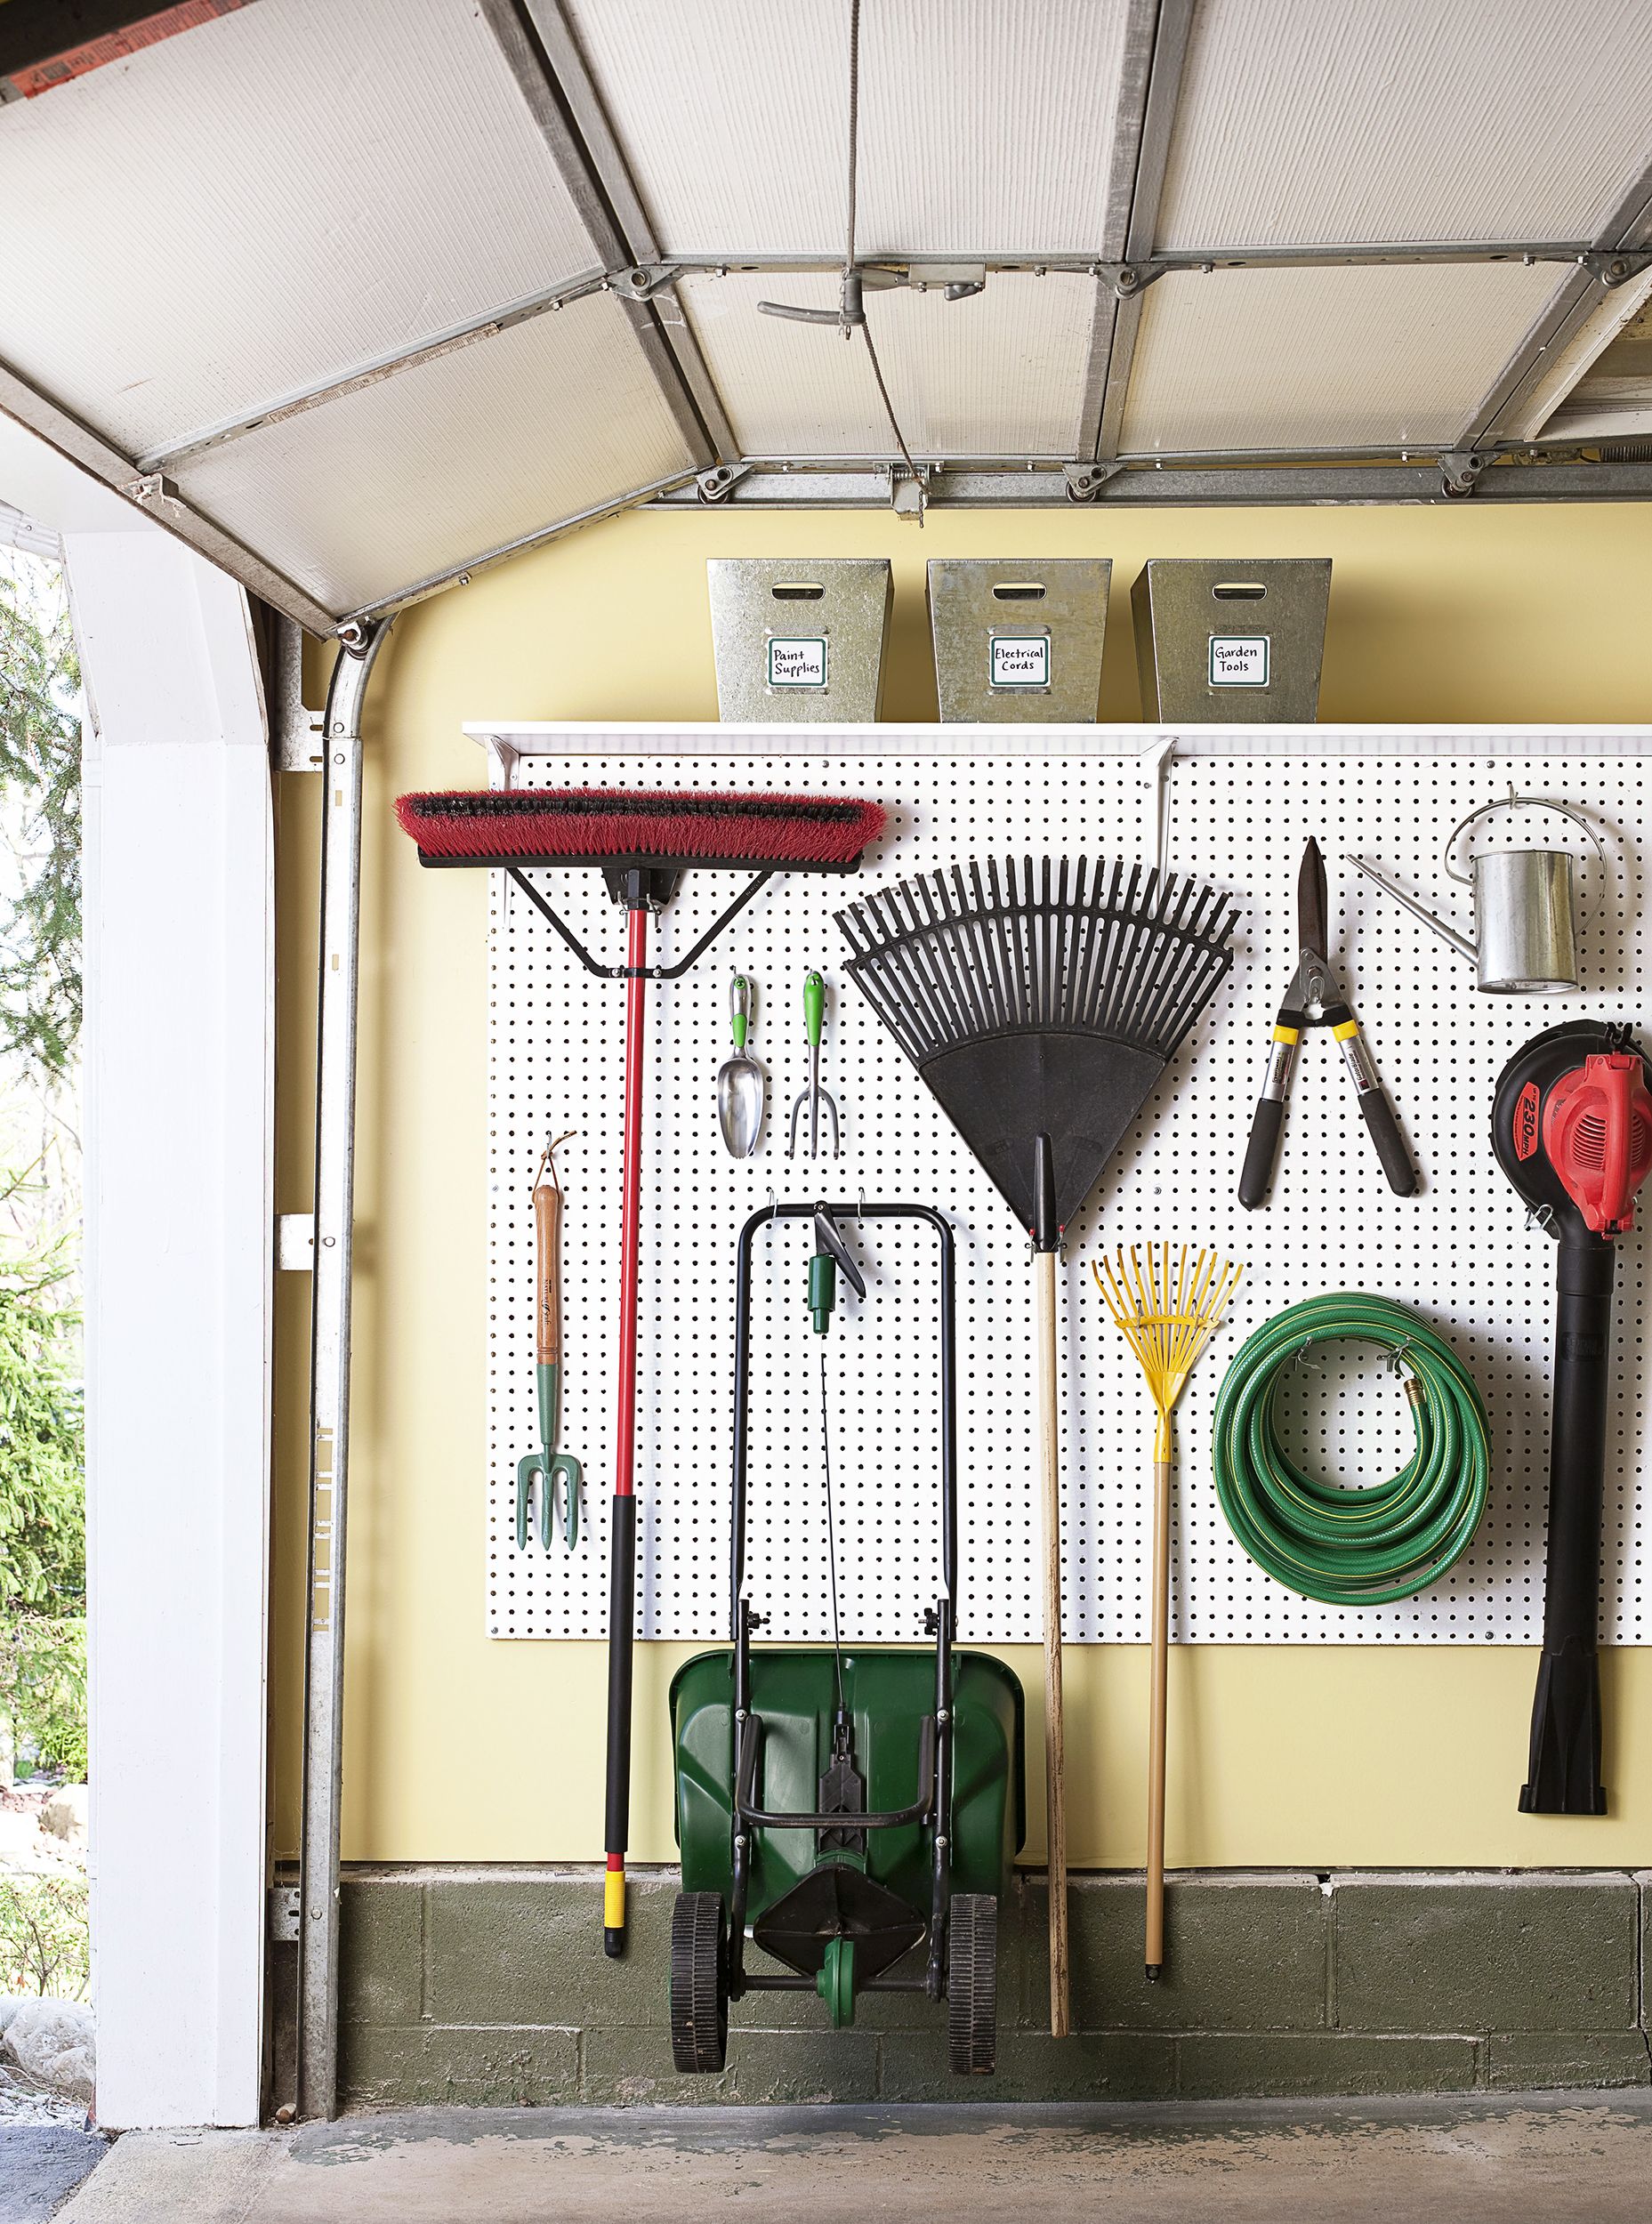 Genius Garage Storage Ideas To Get You Organized